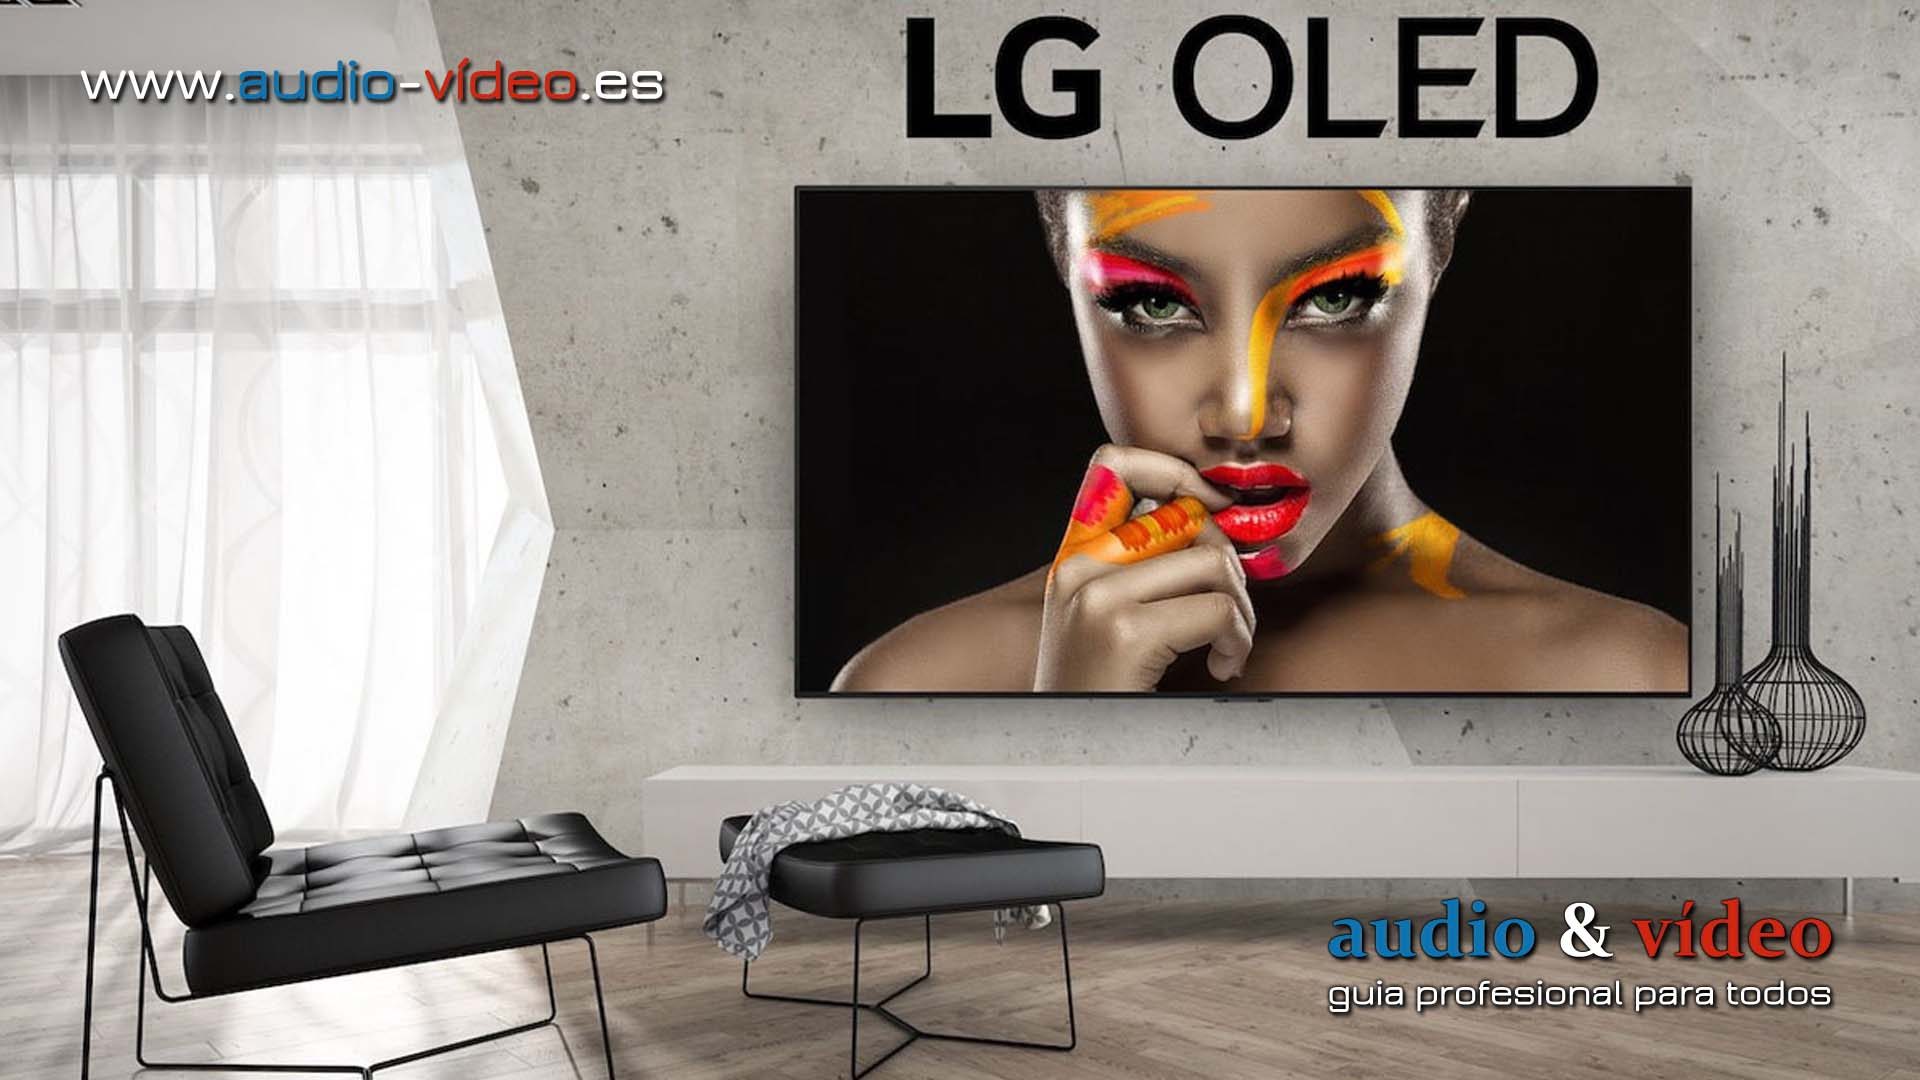 LG serie OLED ZX 8K, WX, GX, BX – 4K UHD – en Julio 2020 ya en venta